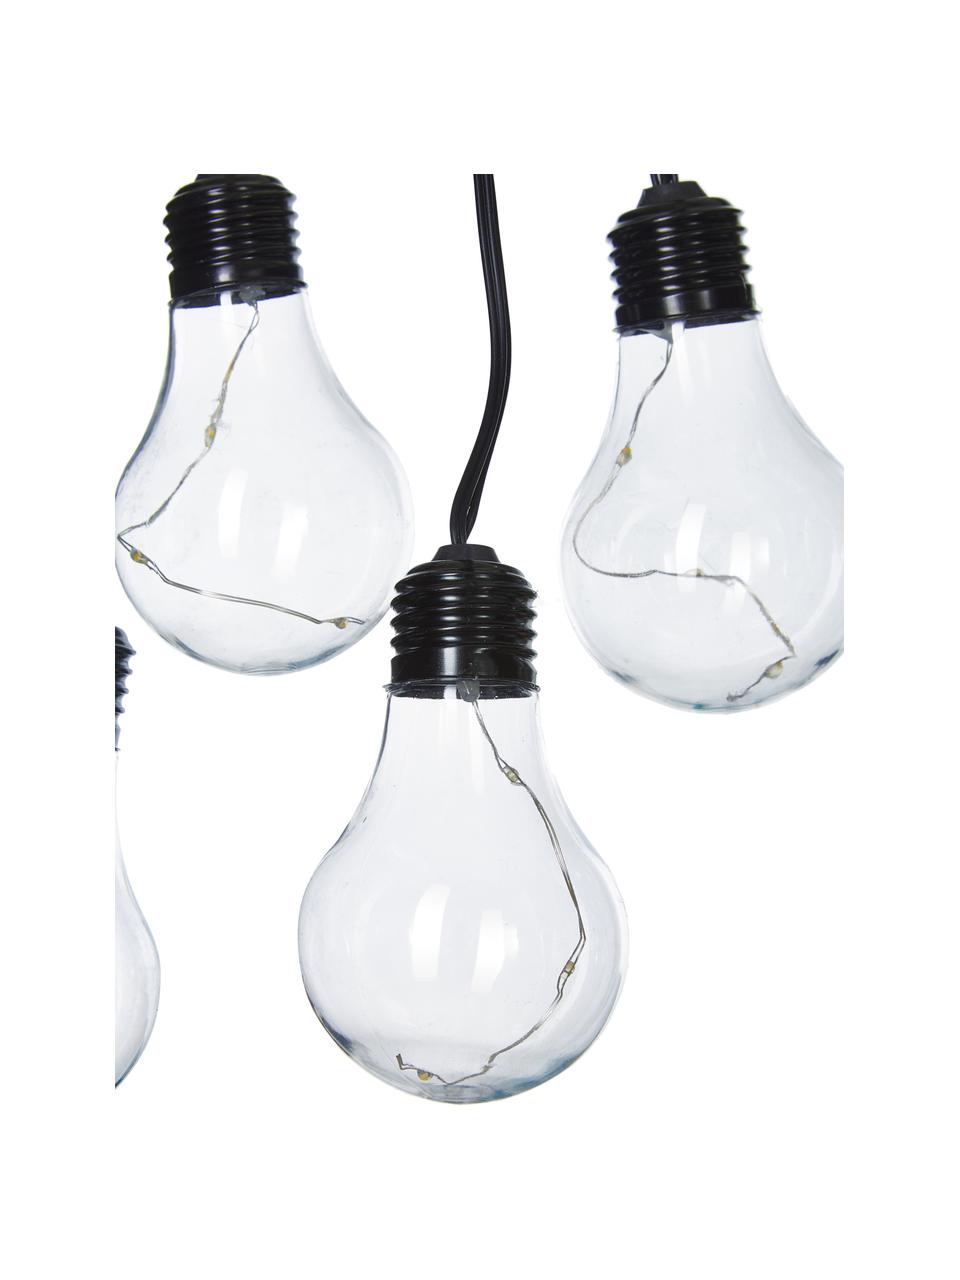 Guirnalda de luces Partytime, 800 cm, 10 luces, Cable: plástico, Negro, transparente, L 800 cm